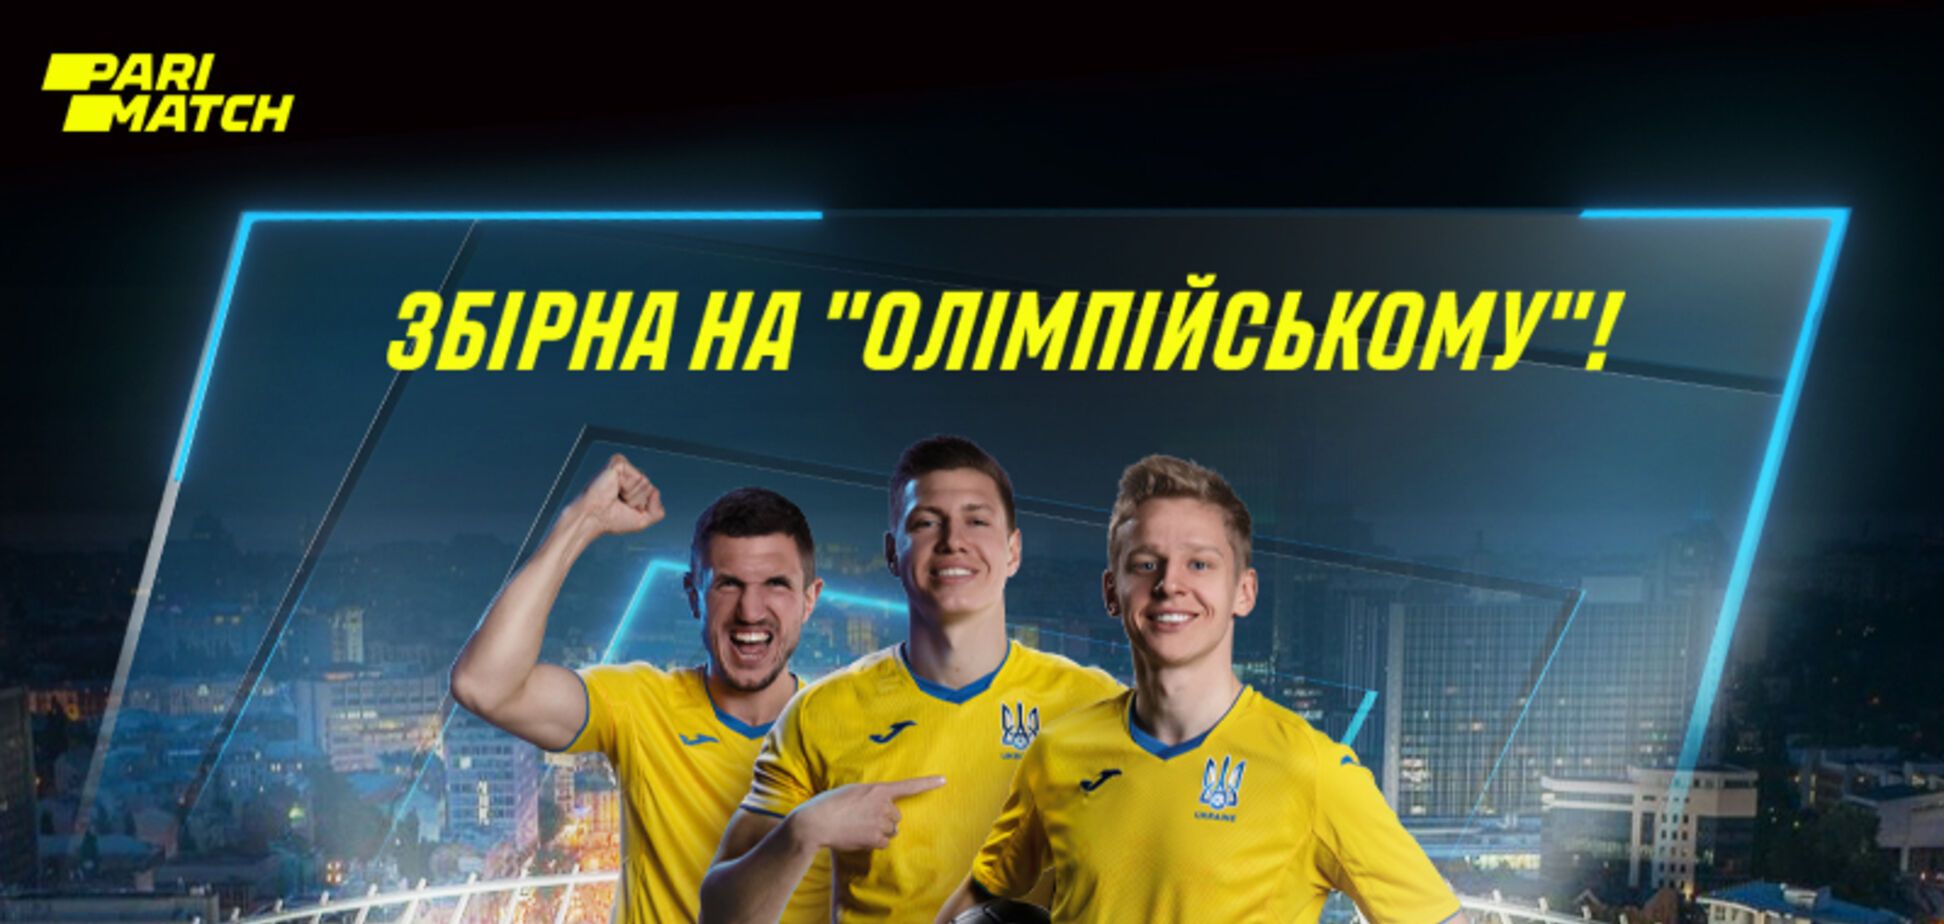 Матчі України на Євро-2020 покажуть на 'Олімпійському'